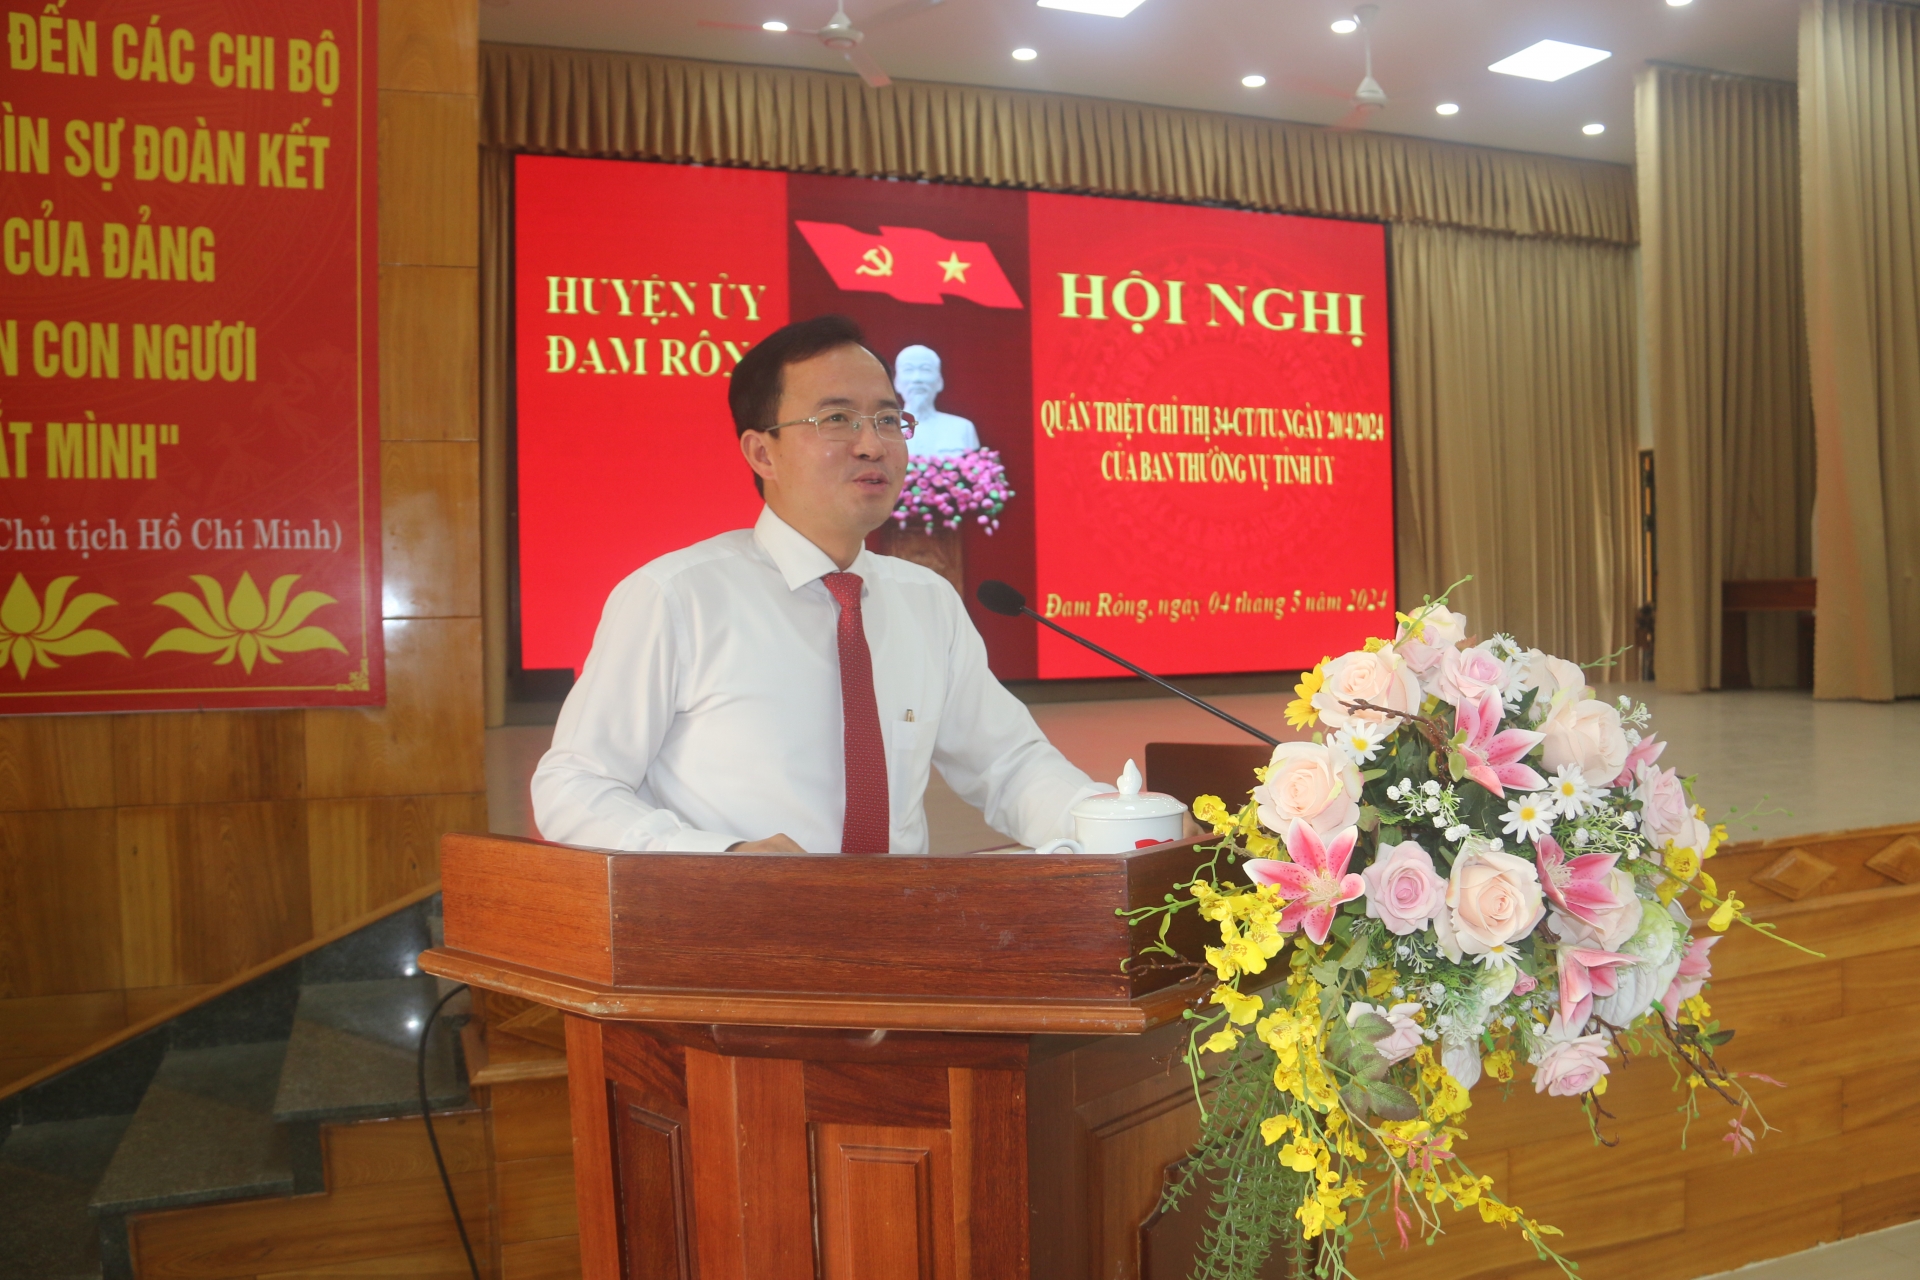 Đồng chí Nguyễn Văn Lộc – Tỉnh ủy viên, Bí thư Huyện ủy, Chủ tịch HĐND huyện quán triệt và triển khai nội dung, các giải pháp thực hiện Chỉ thị số 34